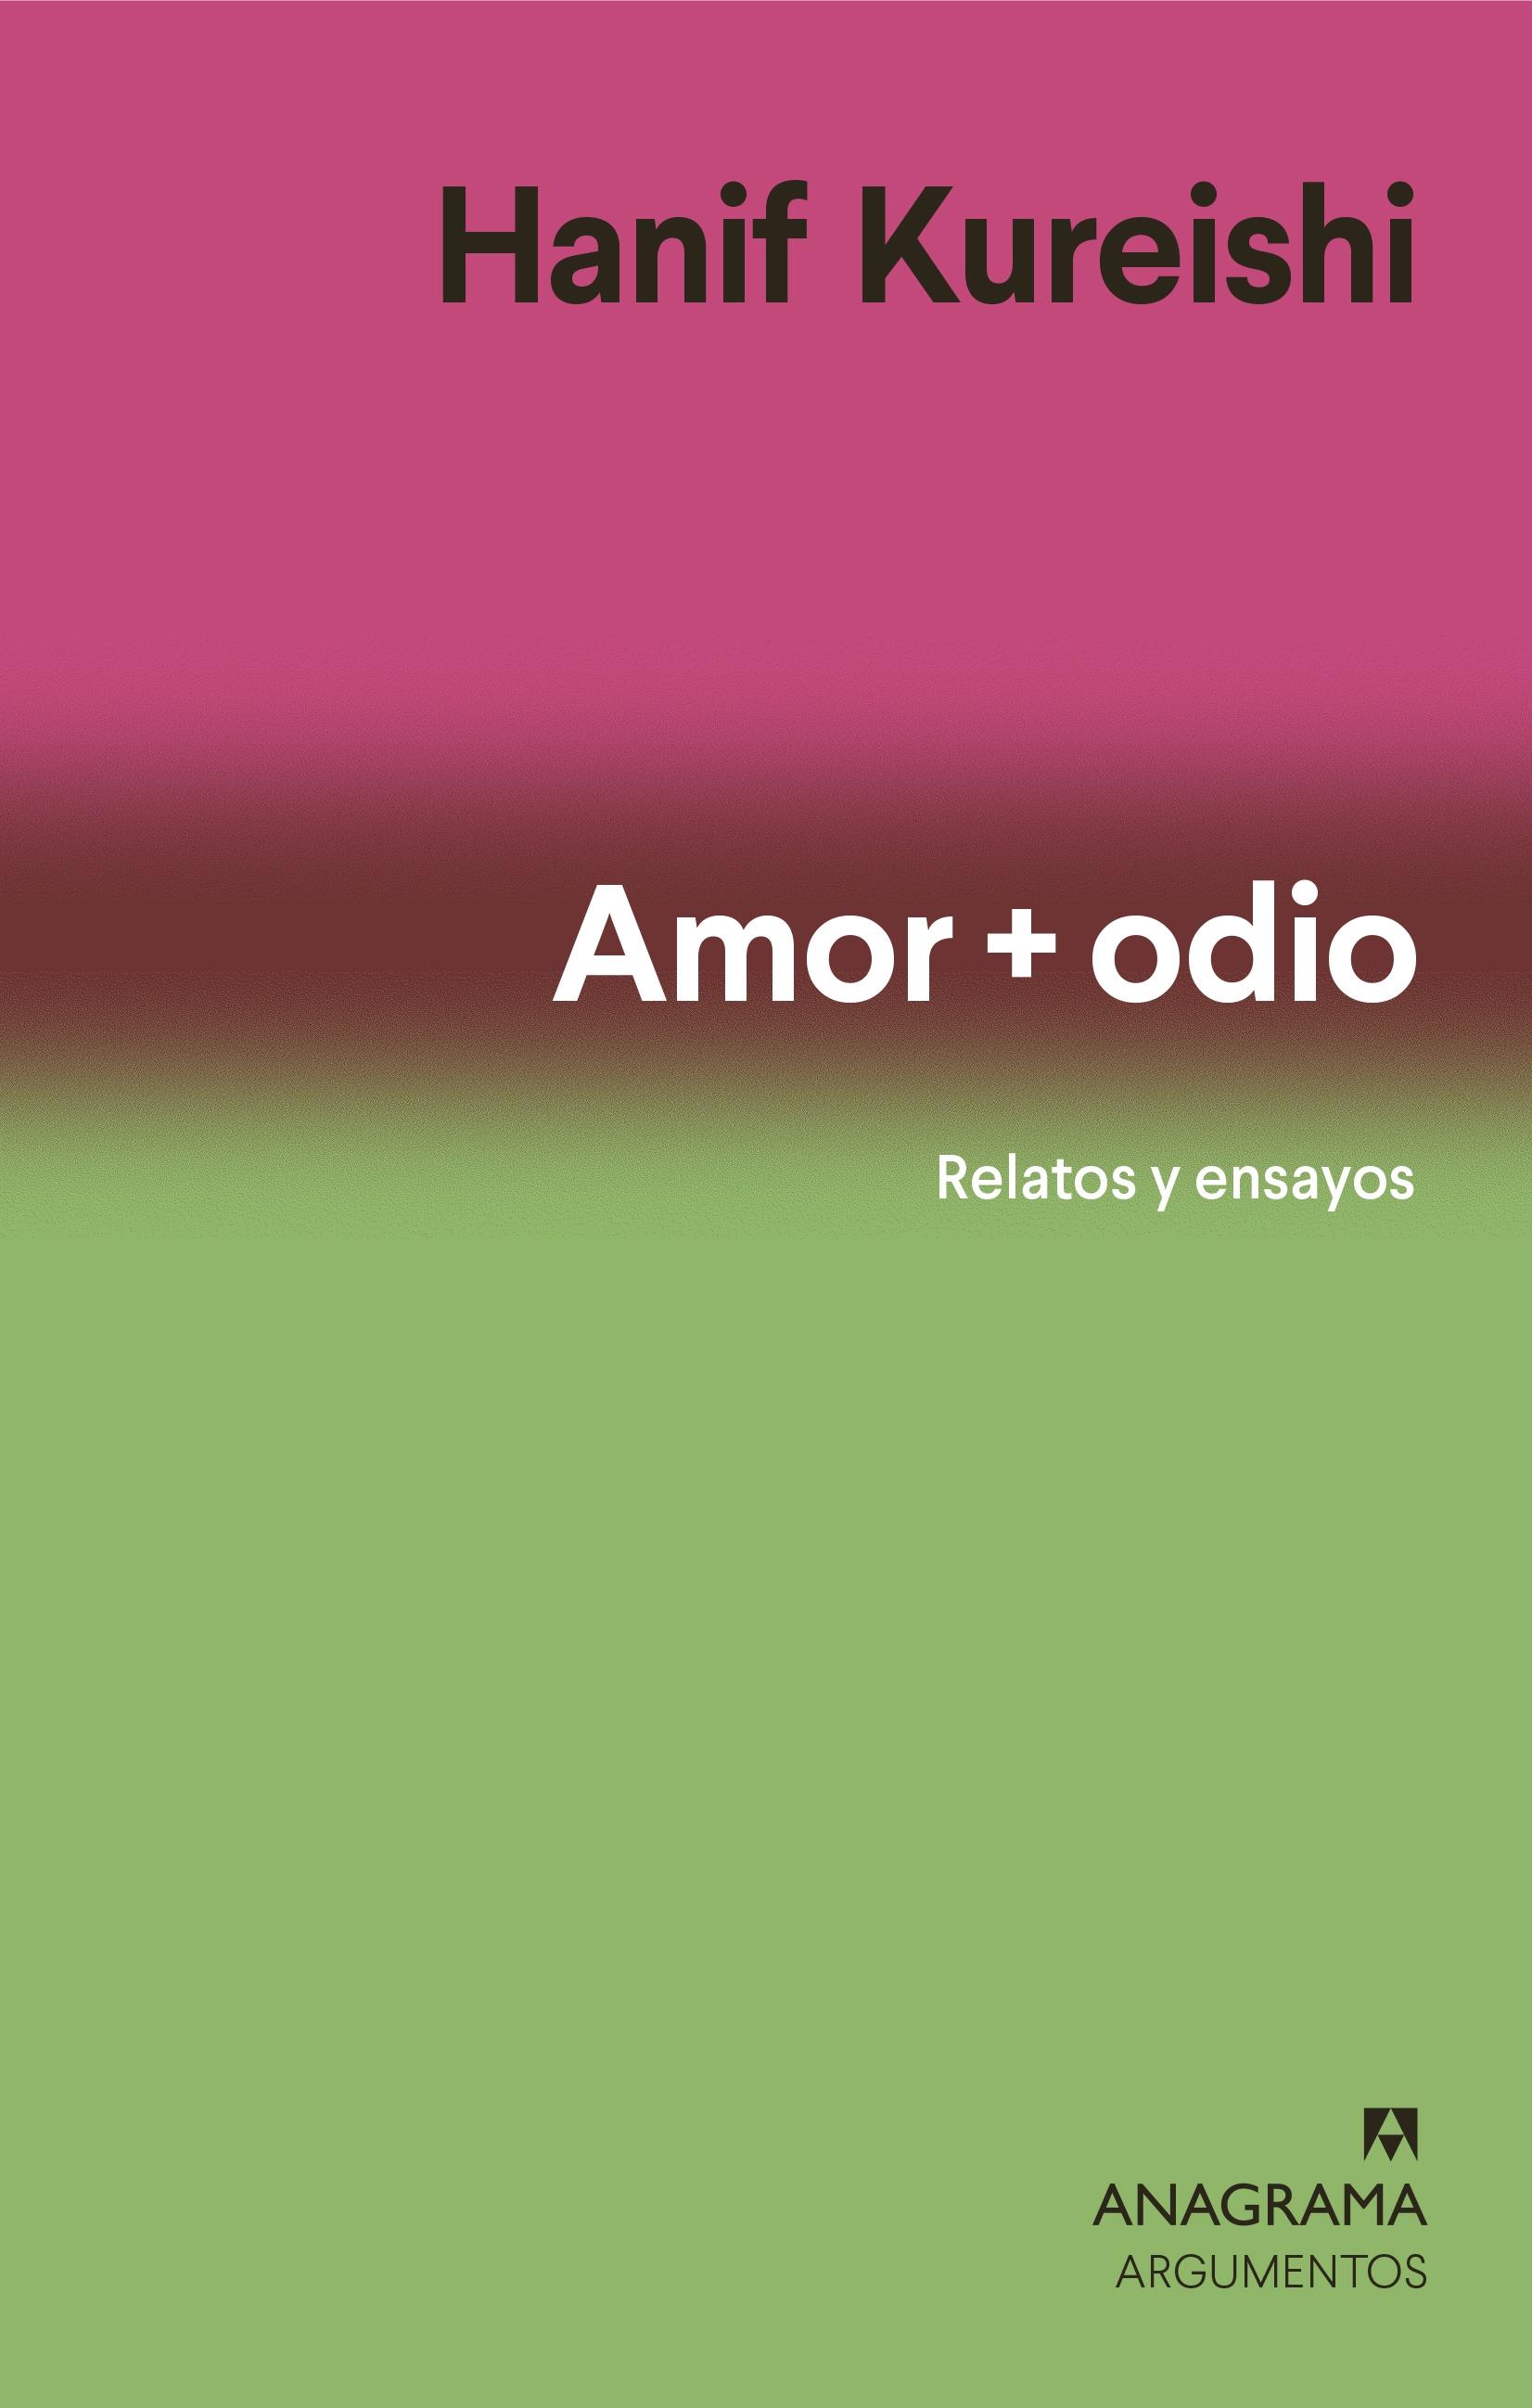 Amor + odio "Relatos y ensayos"